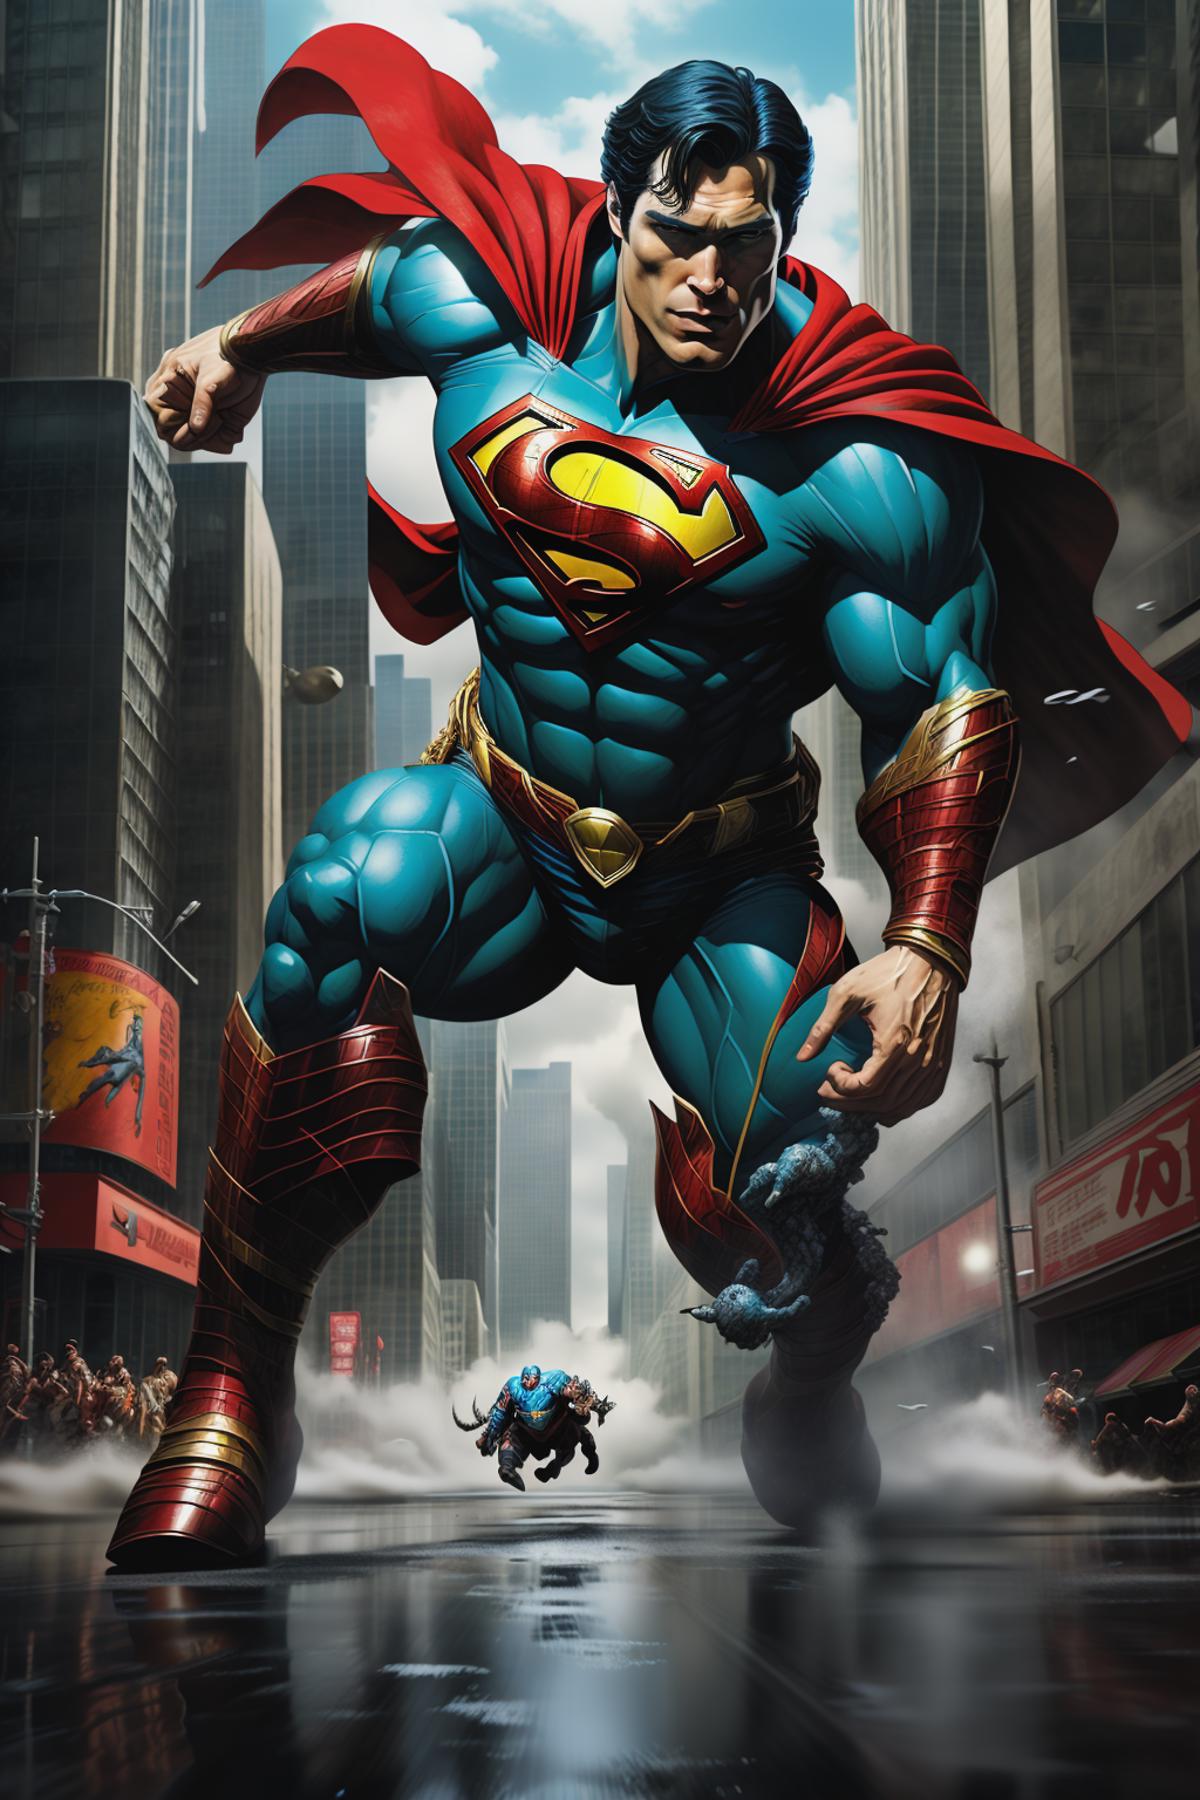 Superhero Pose image by moesah